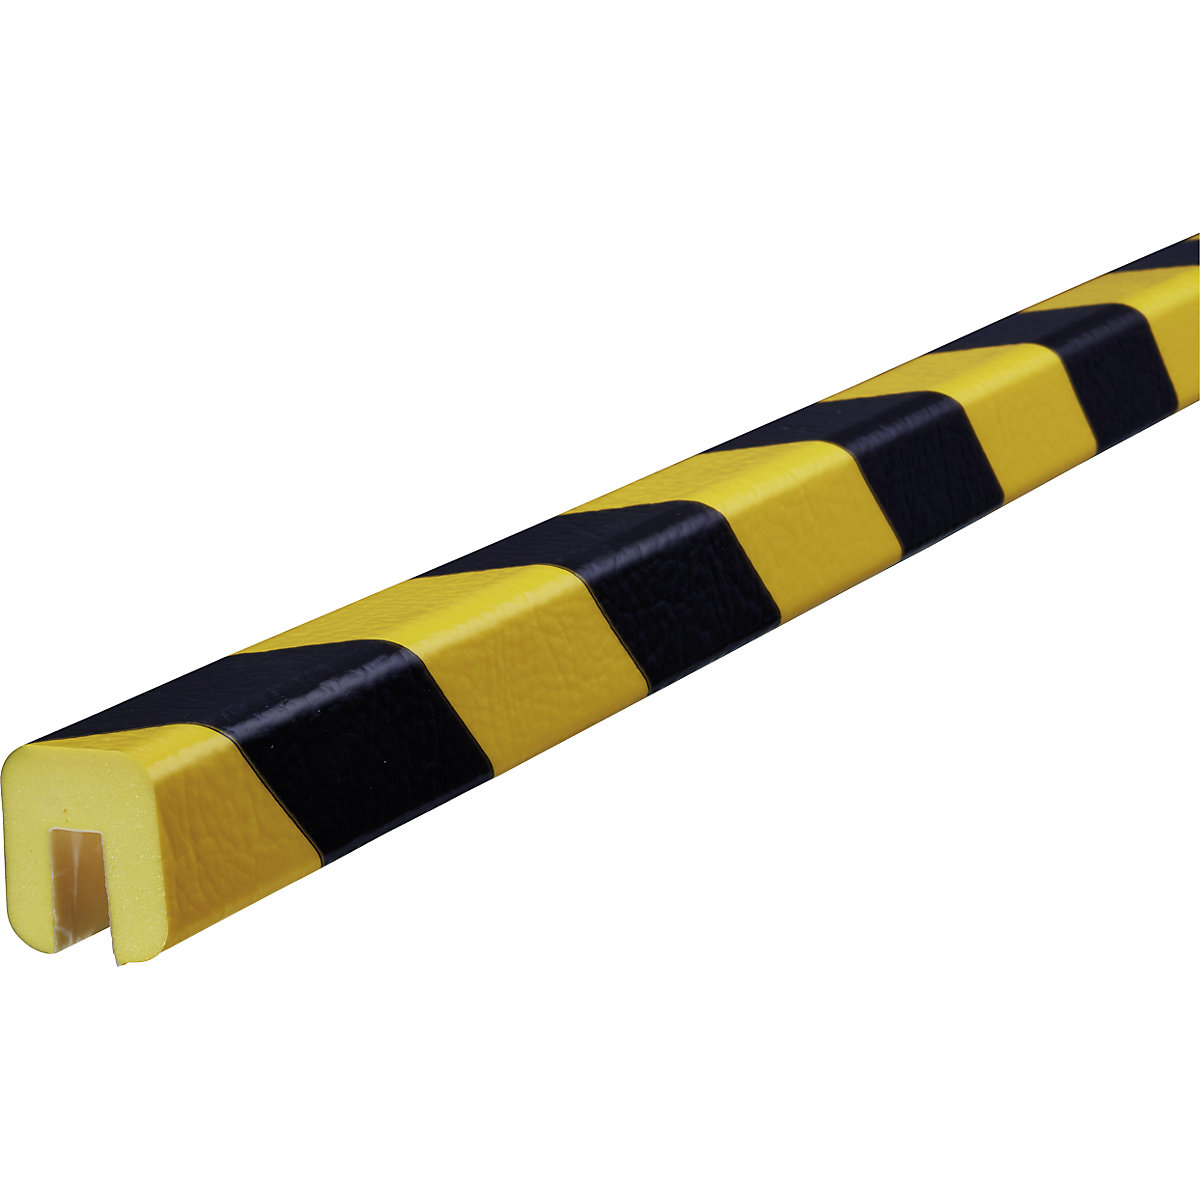 Okrawędziowanie Knuffi® – SHG, typ G, szt. 1 m, czarny / żółty-18